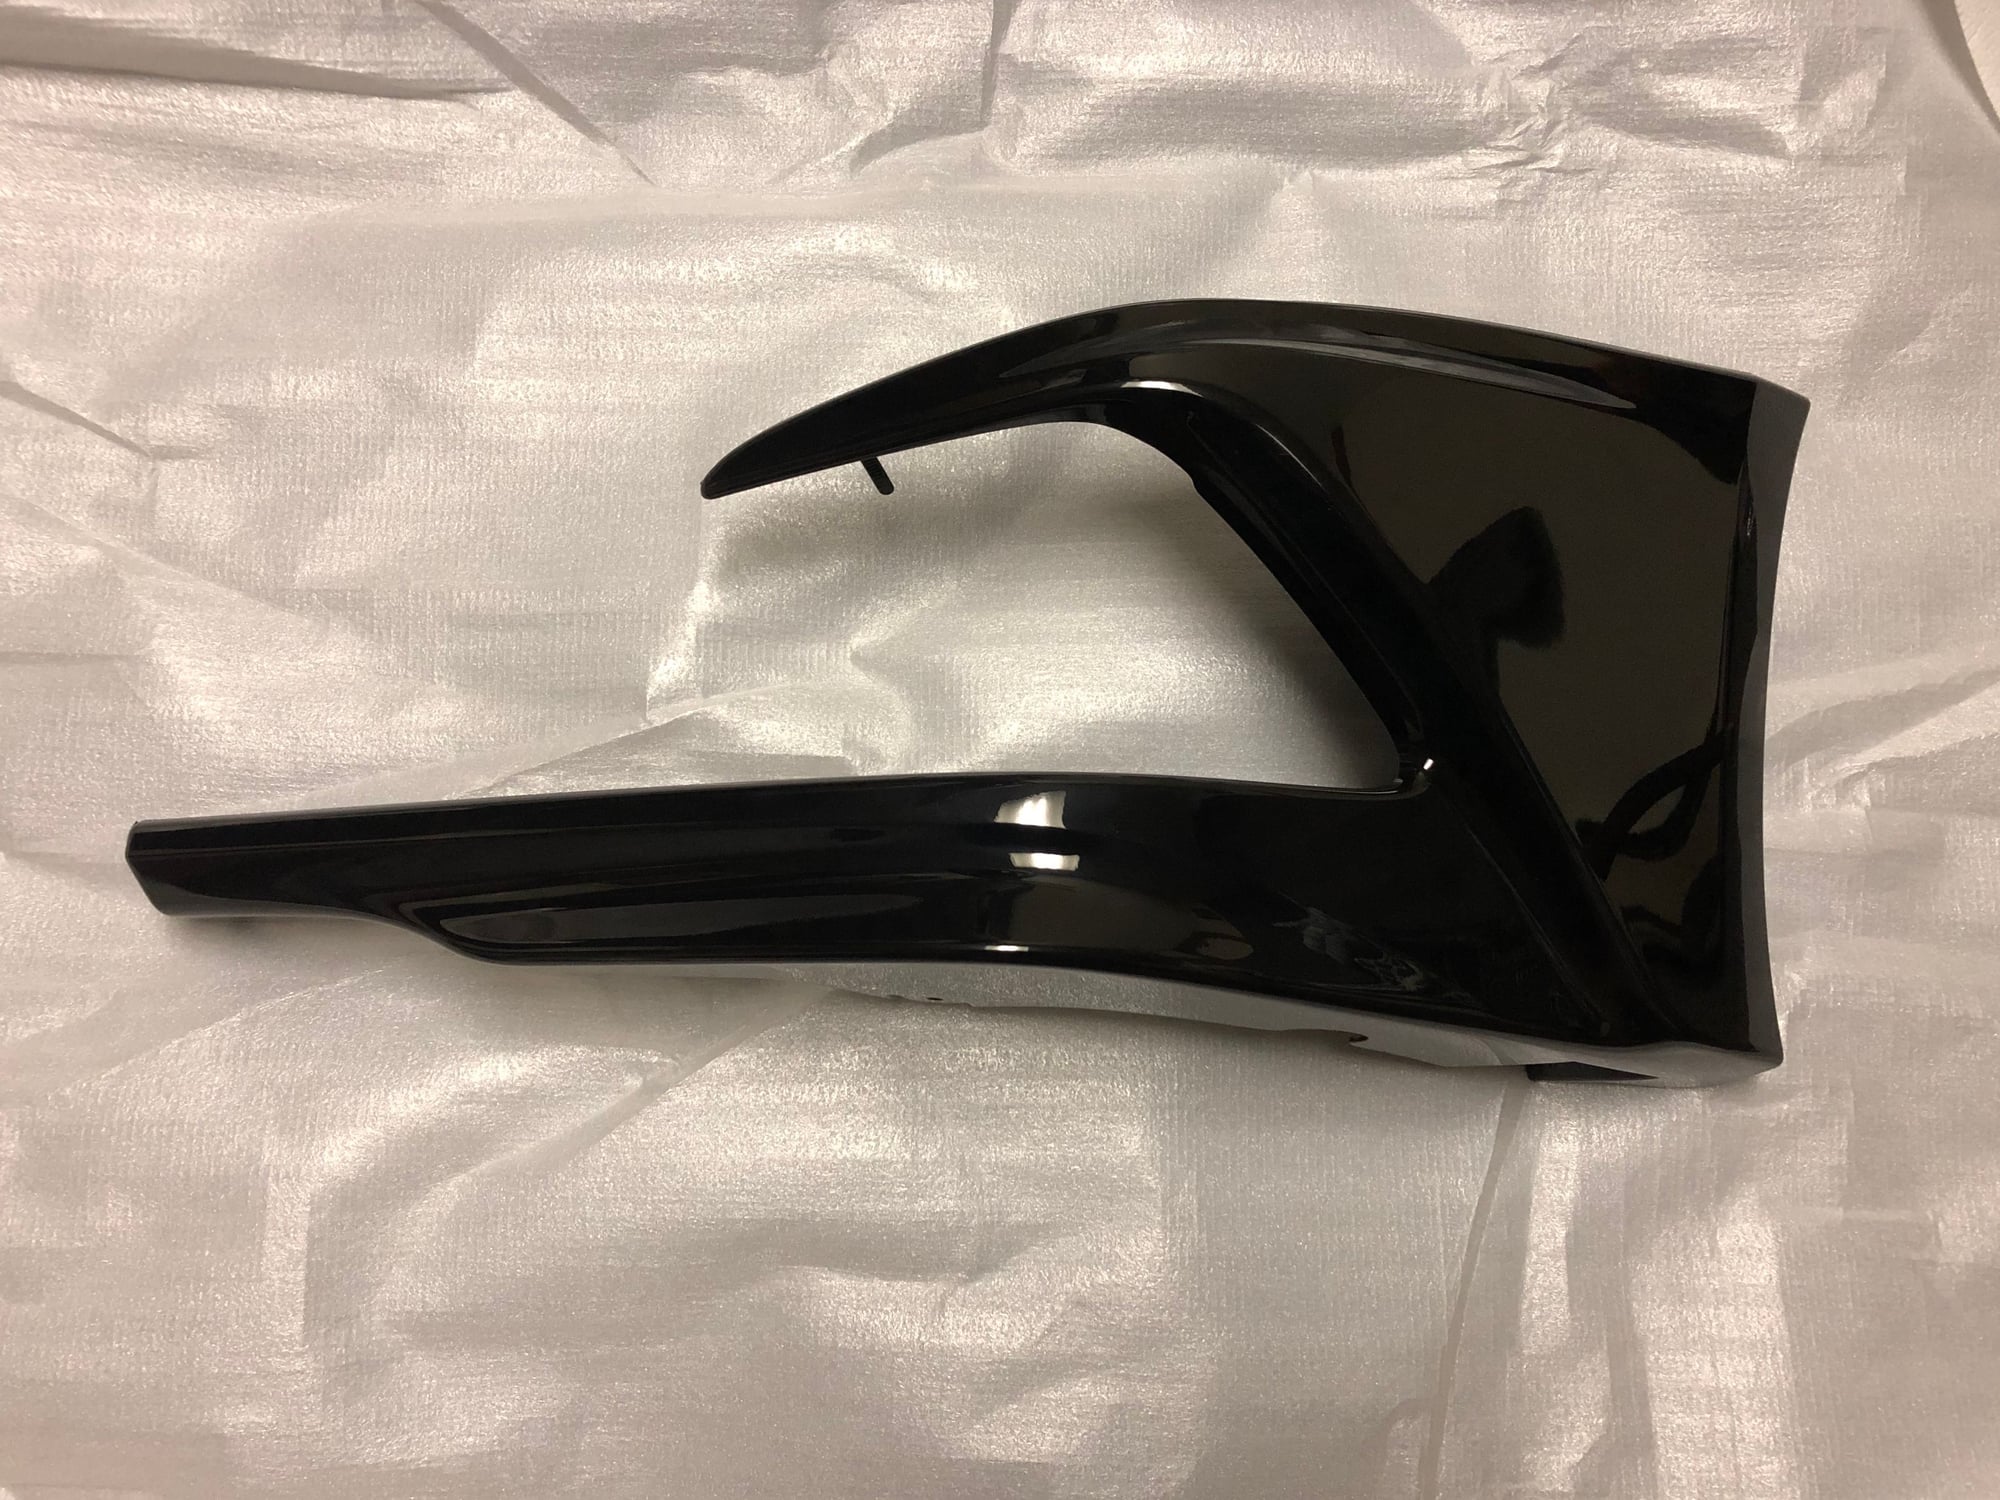 Exterior Body Parts - FS: Acura TLX Lip Kit OEM - New - 2014 to 2017 Acura TLX - New York, NY 10468, United States